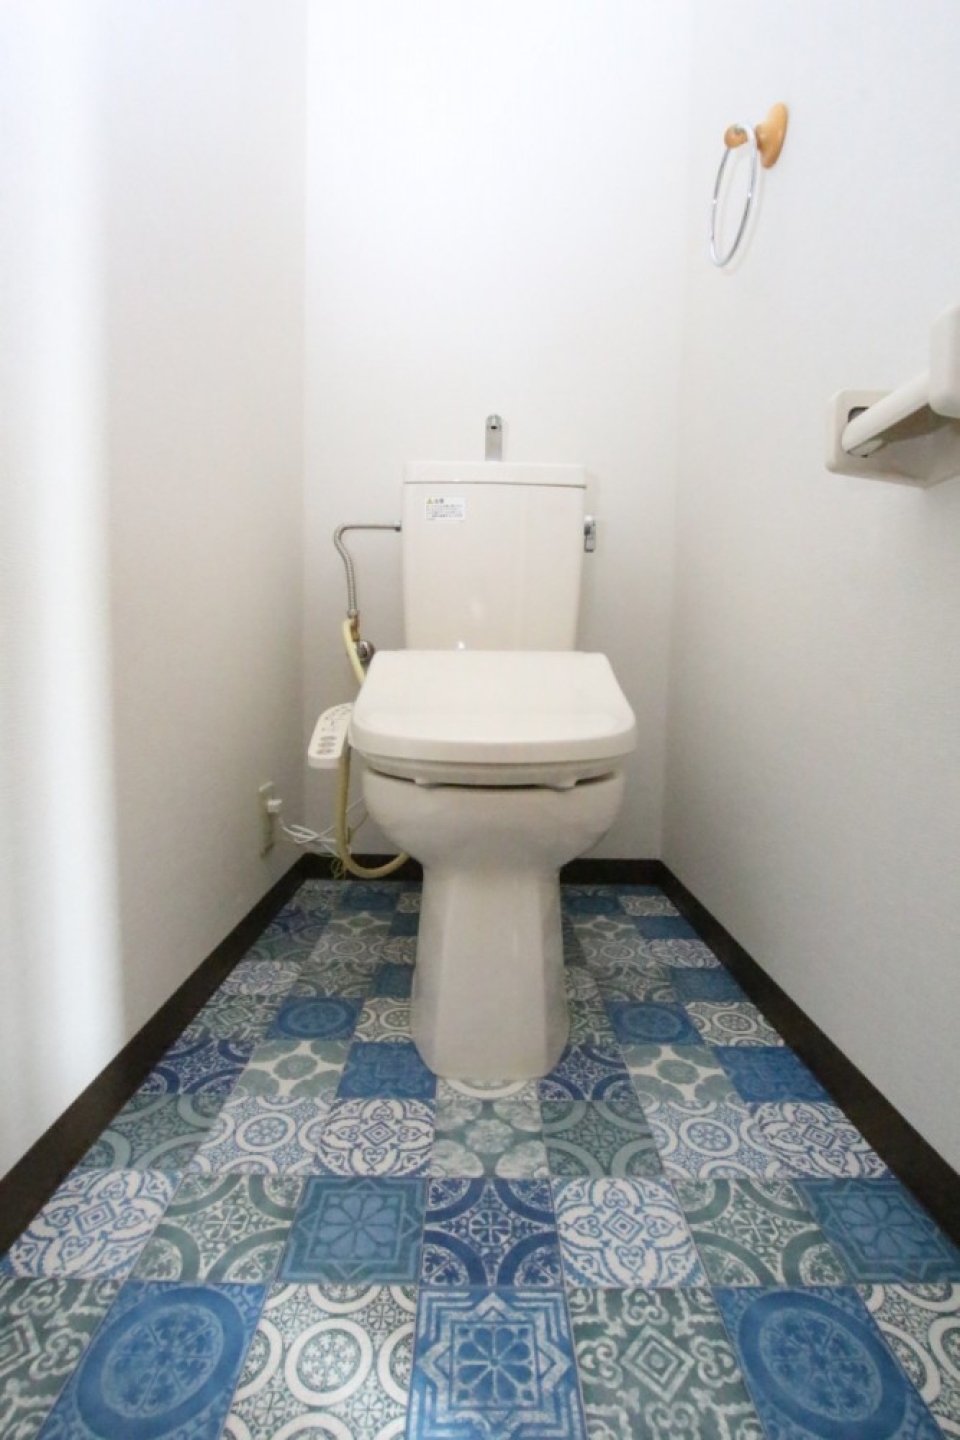 トイレ内の床はド派手デザイン。